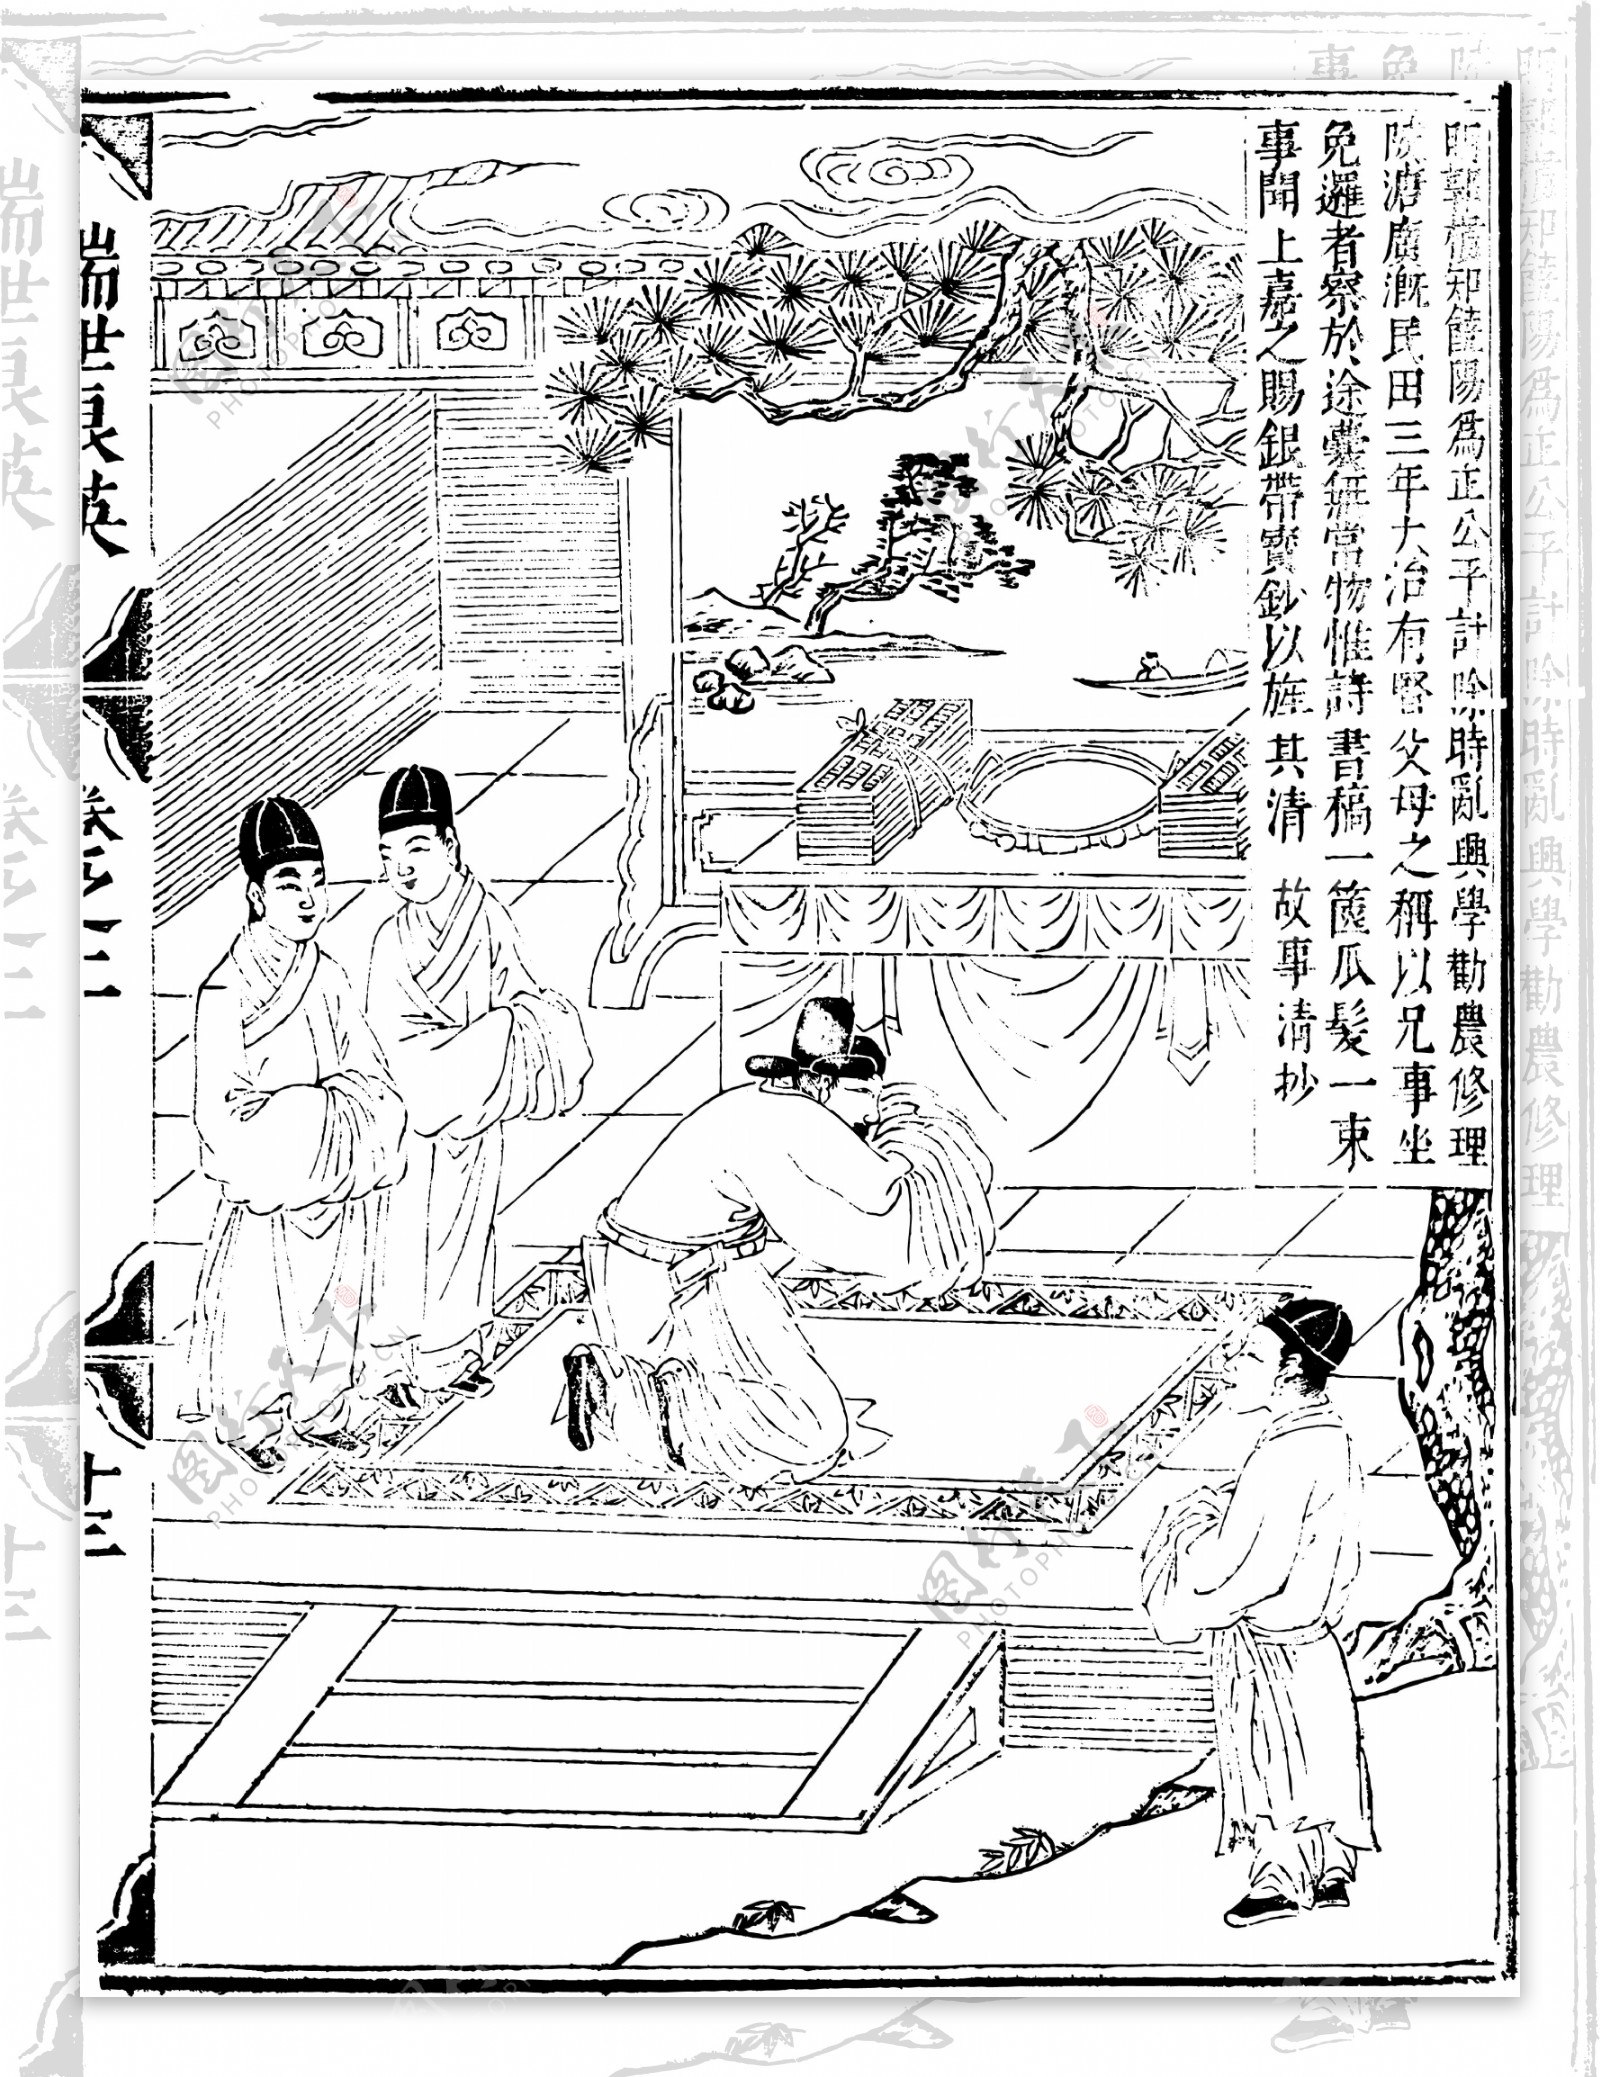 瑞世良英木刻版画中国传统文化86